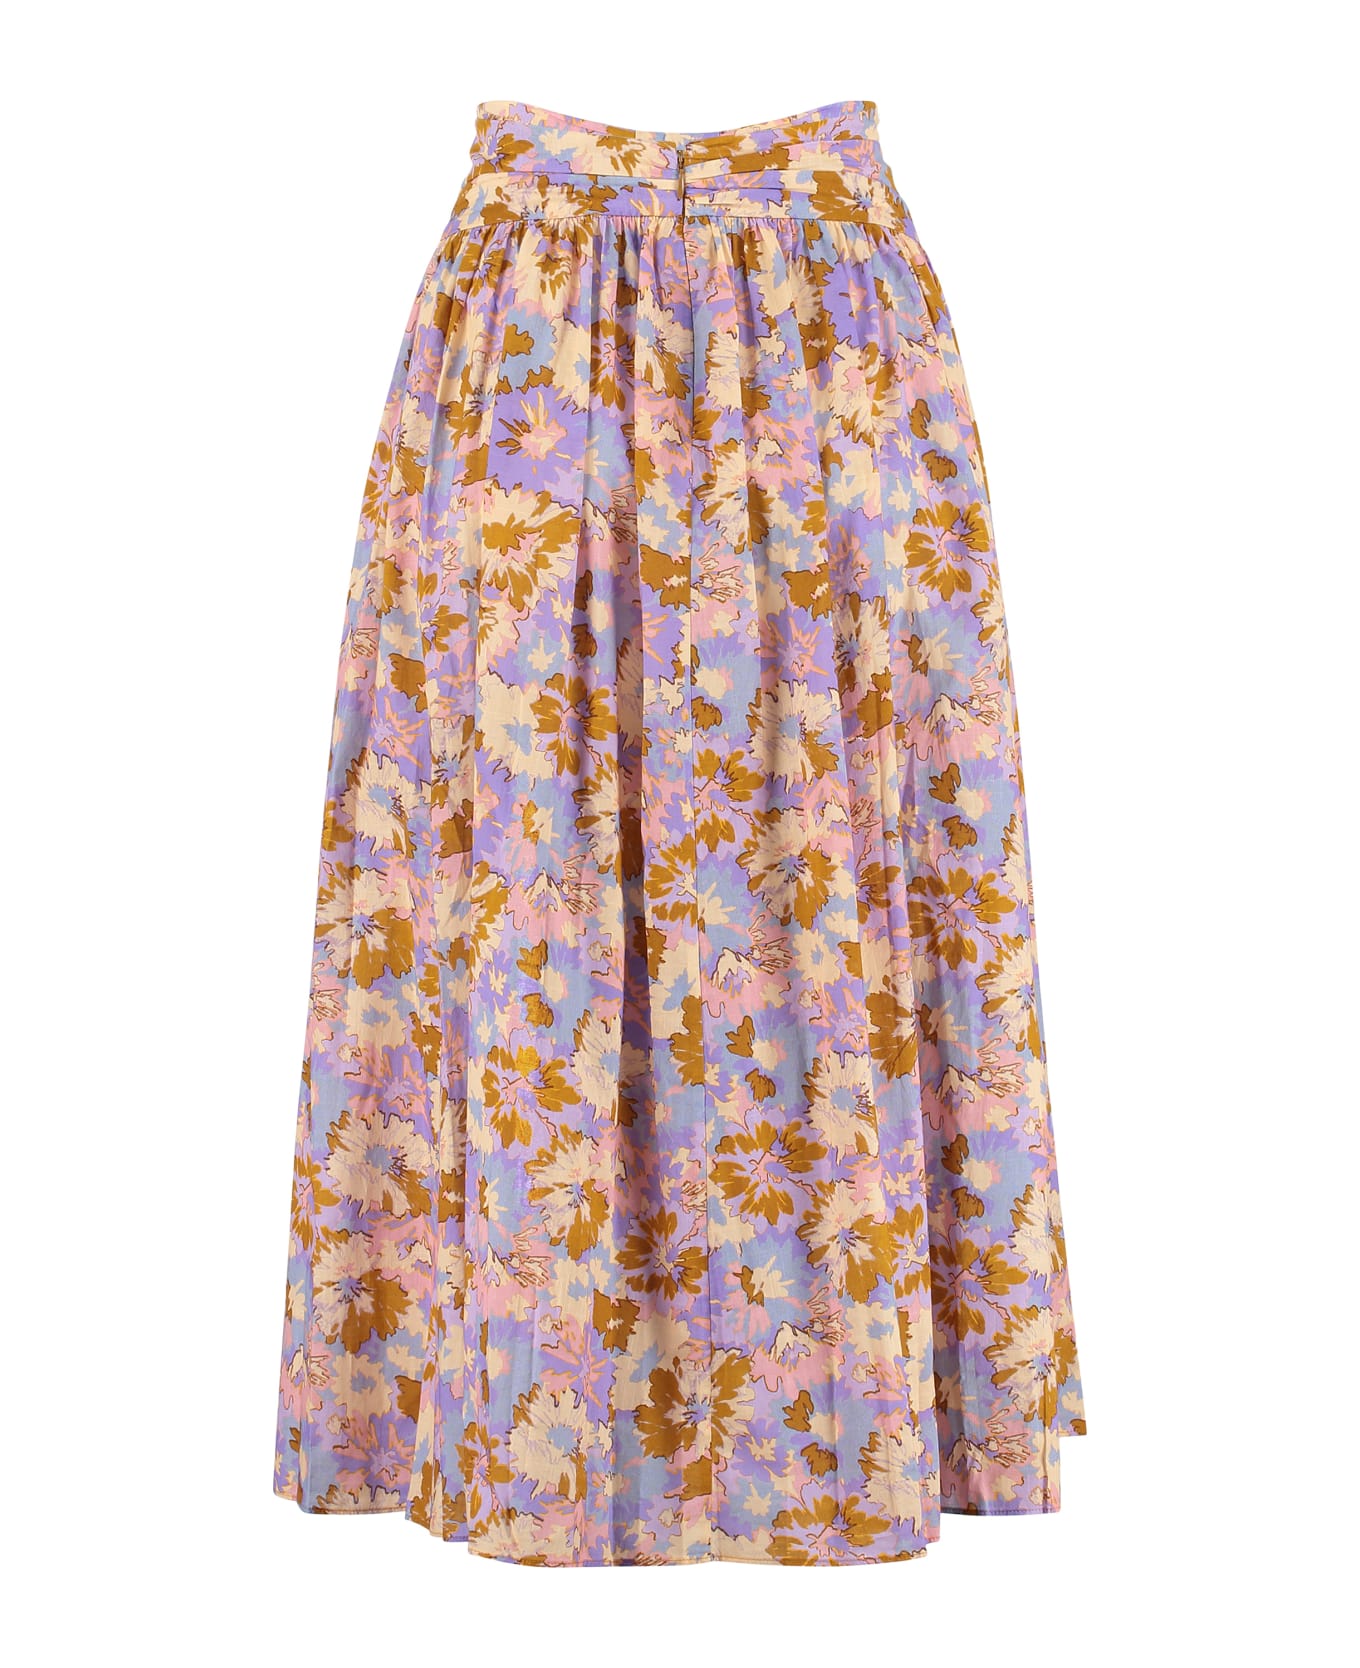 Zimmermann Violet Floral Print Skirt - Multicolor